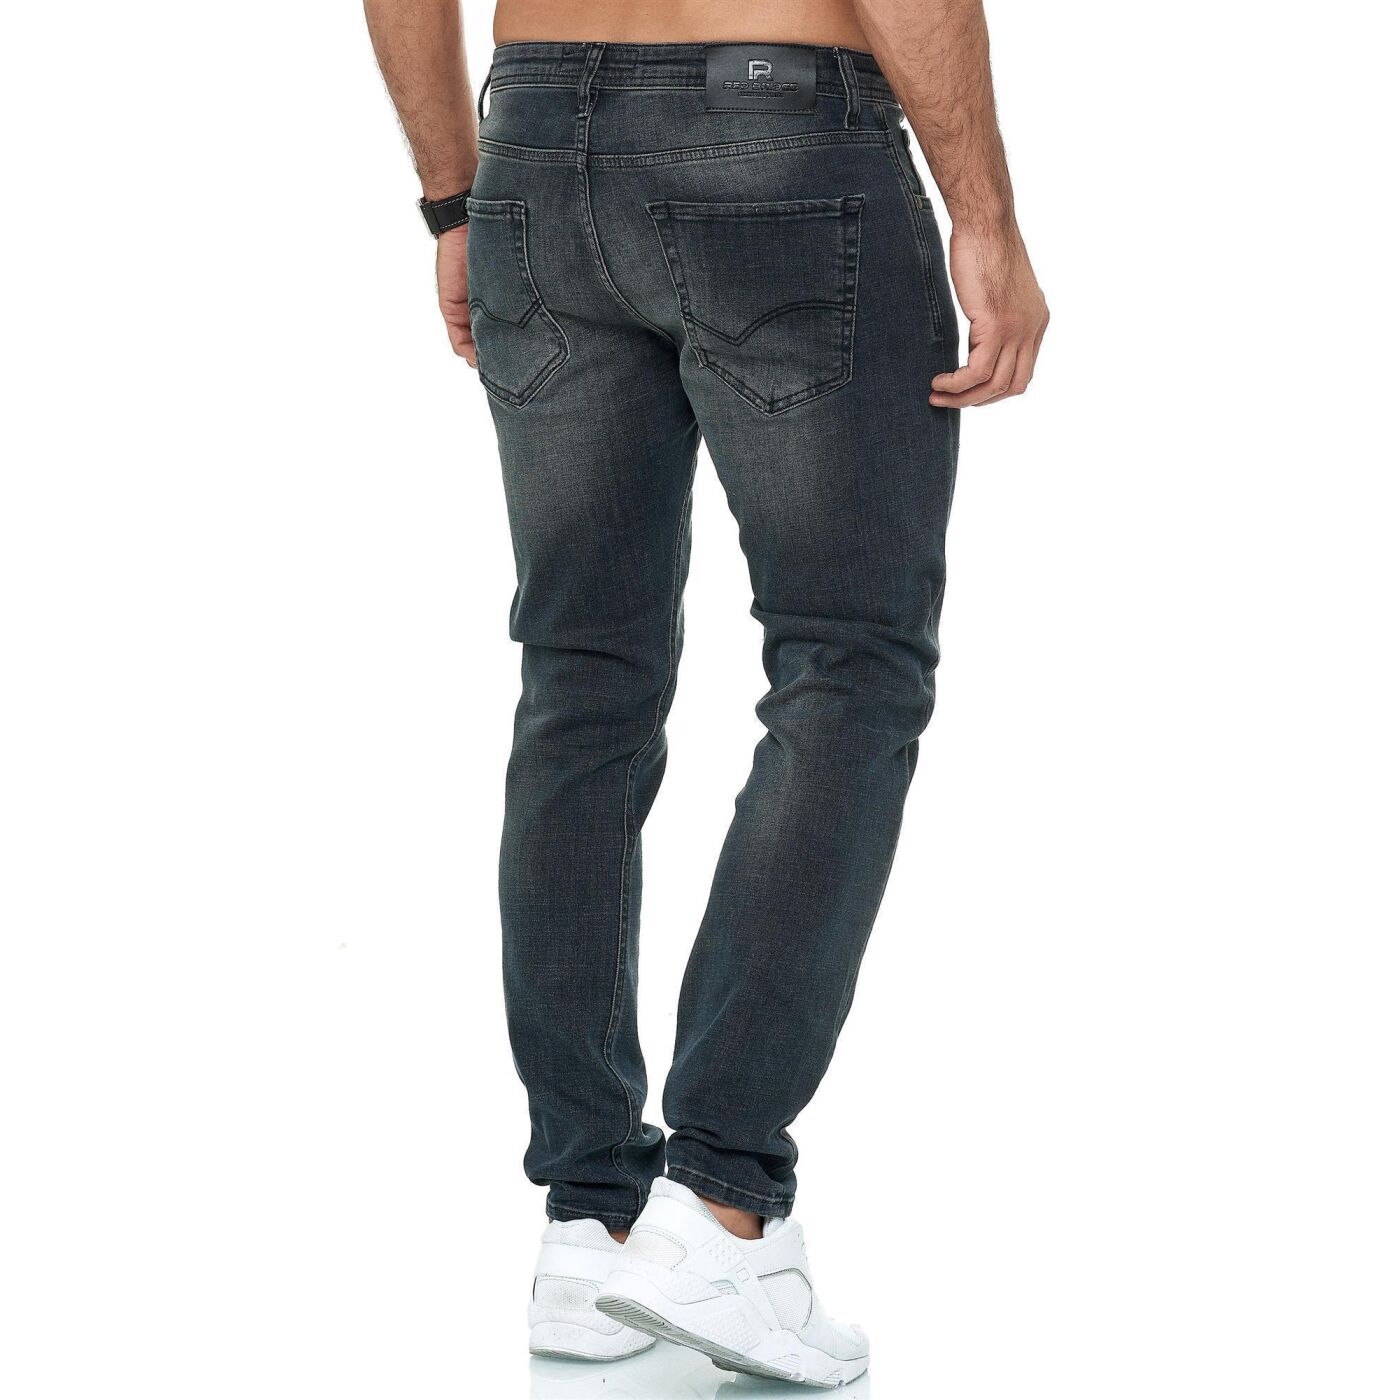 Redbridge Vaqueros para Hombre Jeans Denim Pants Estilo Straight Cut